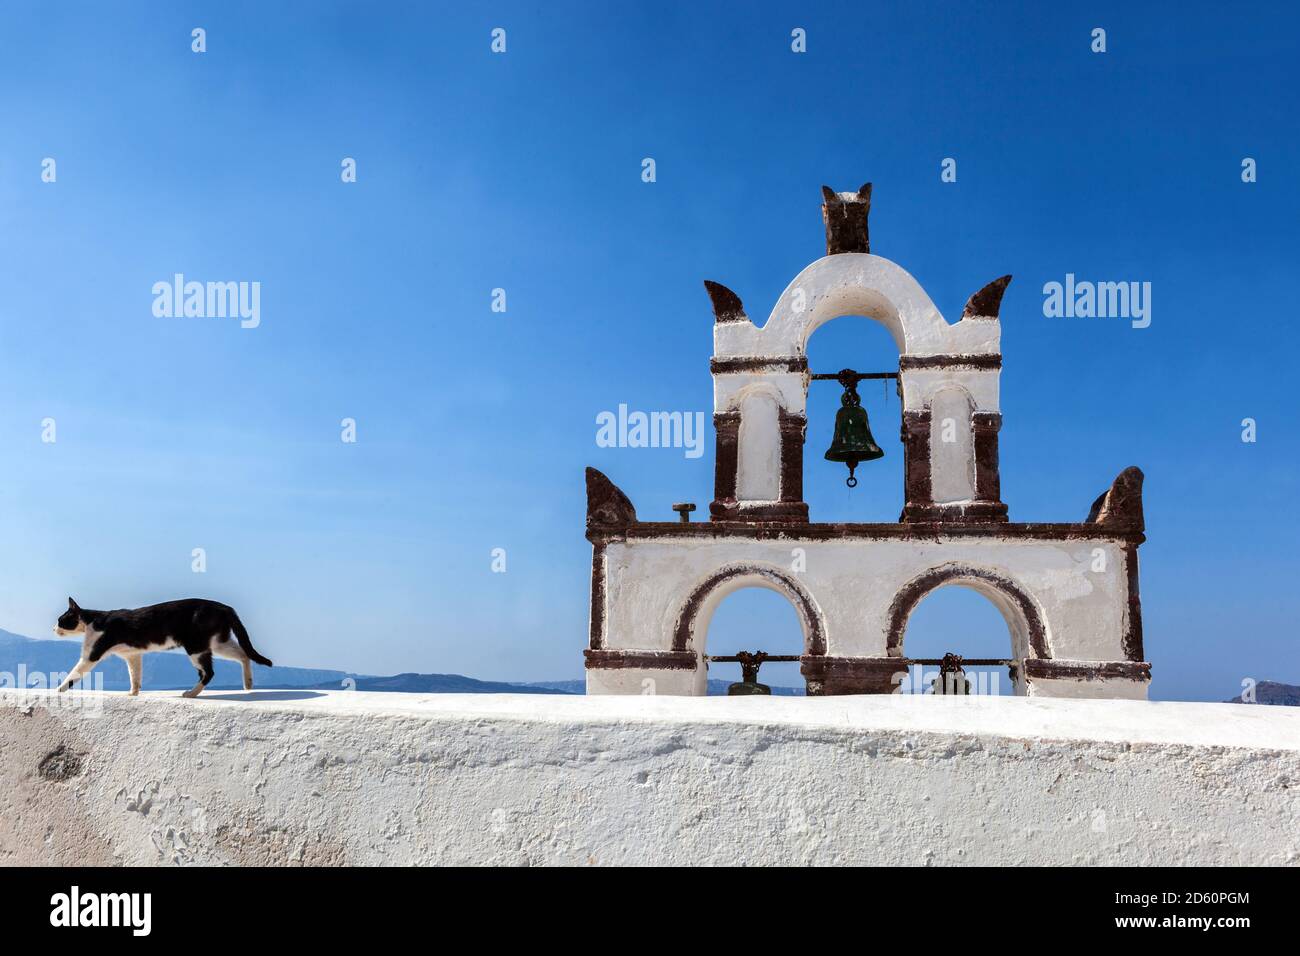 Hauskatze draußen zu Fuß auf dem Rand Dach griechisch orthodoxen Kirche Santorini Griechenland Stockfoto